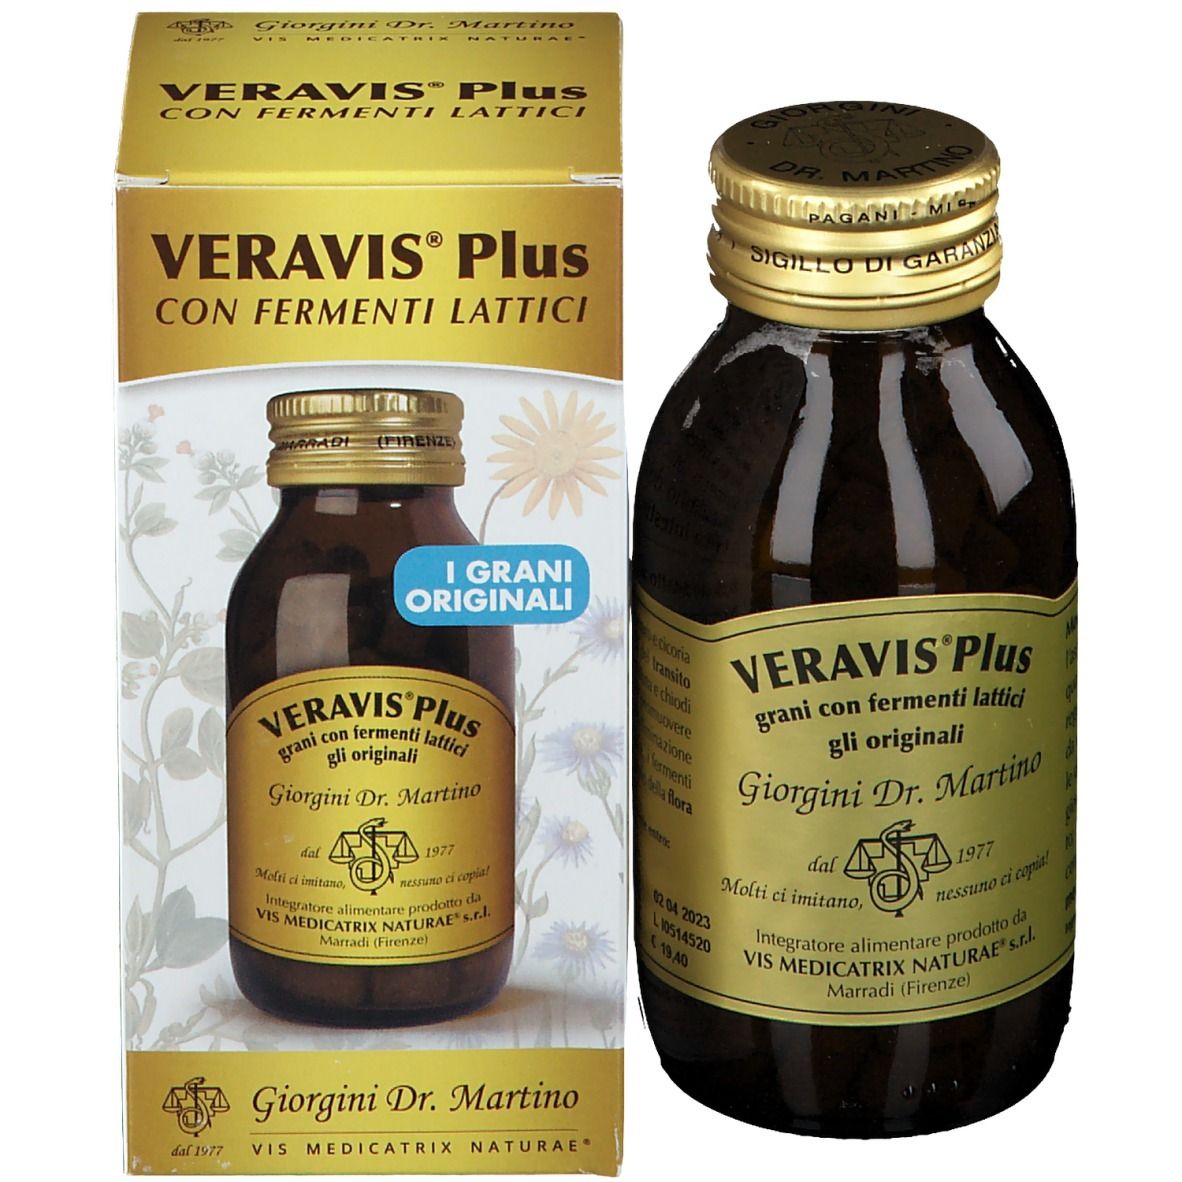 Veravis® Plus